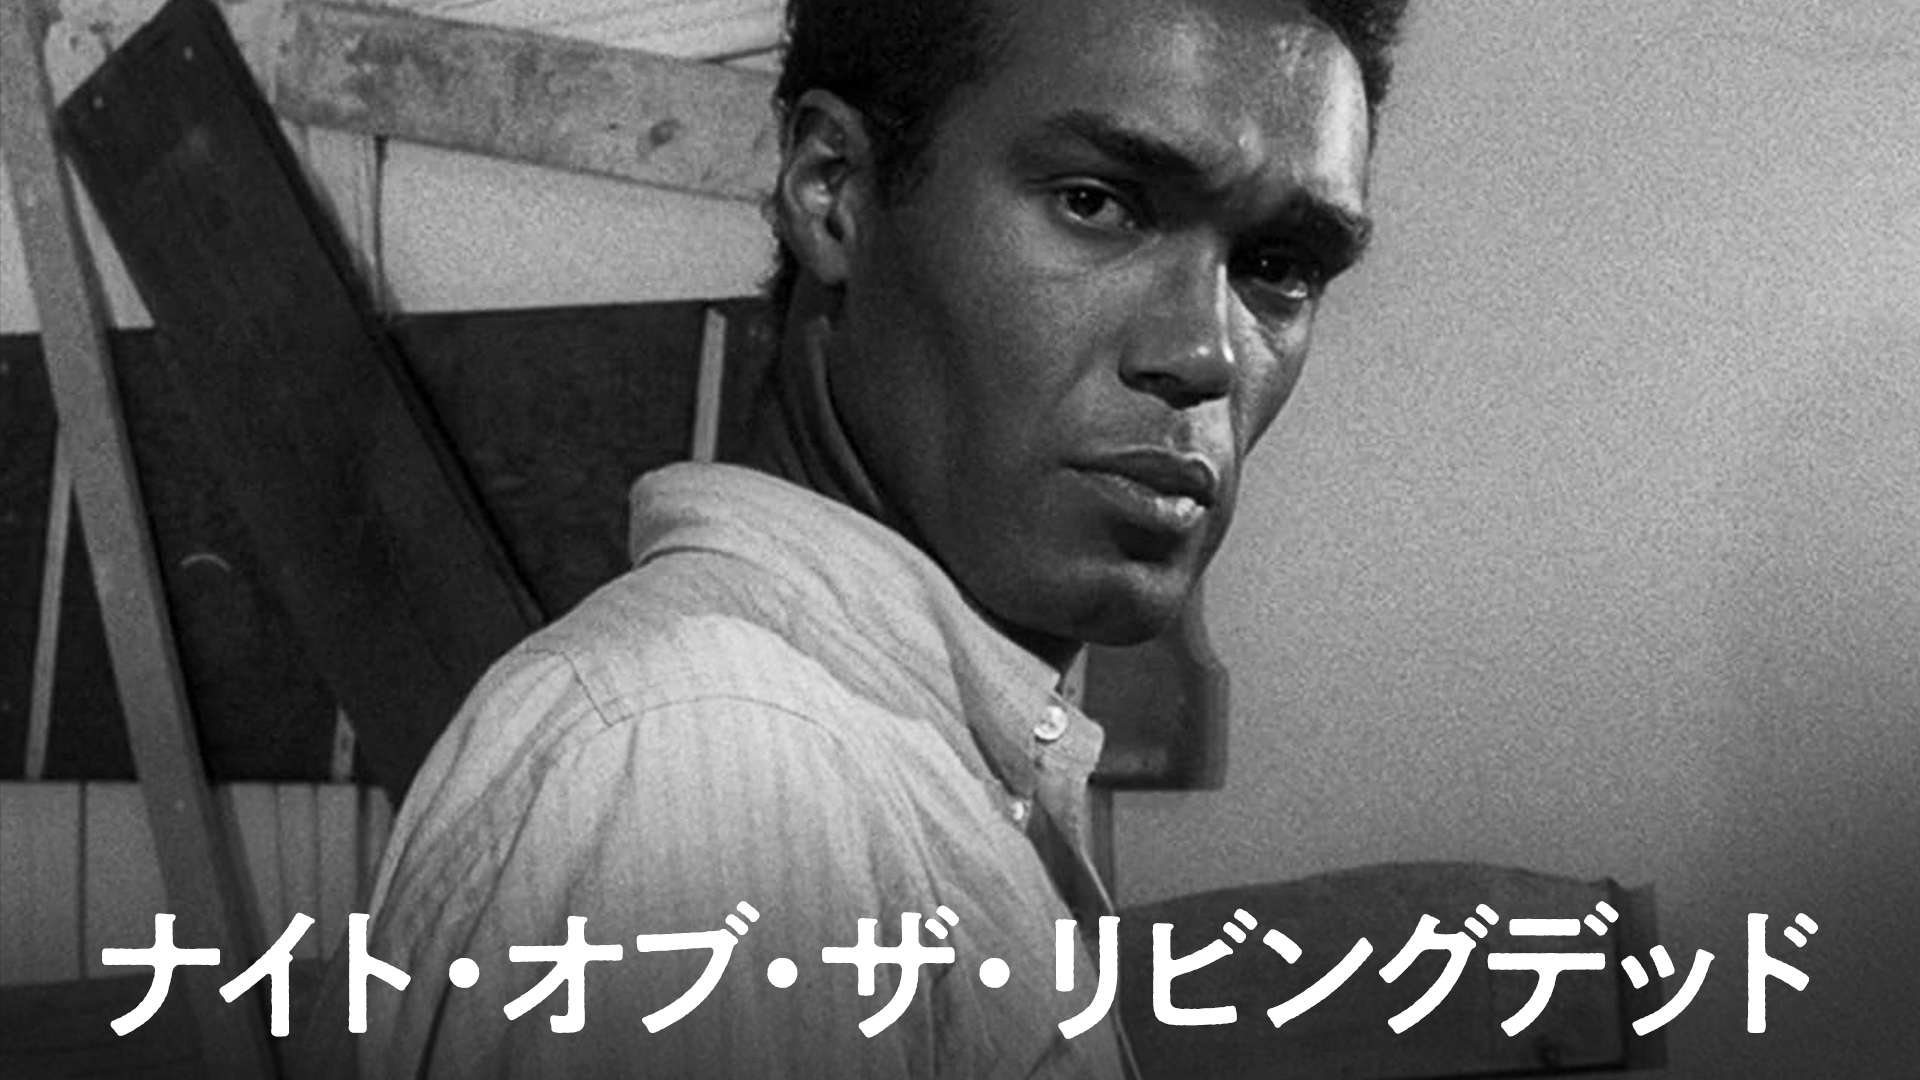 ナイト・オブ・ザ・リビングデッド(洋画 / 1968) - 動画配信 | U 